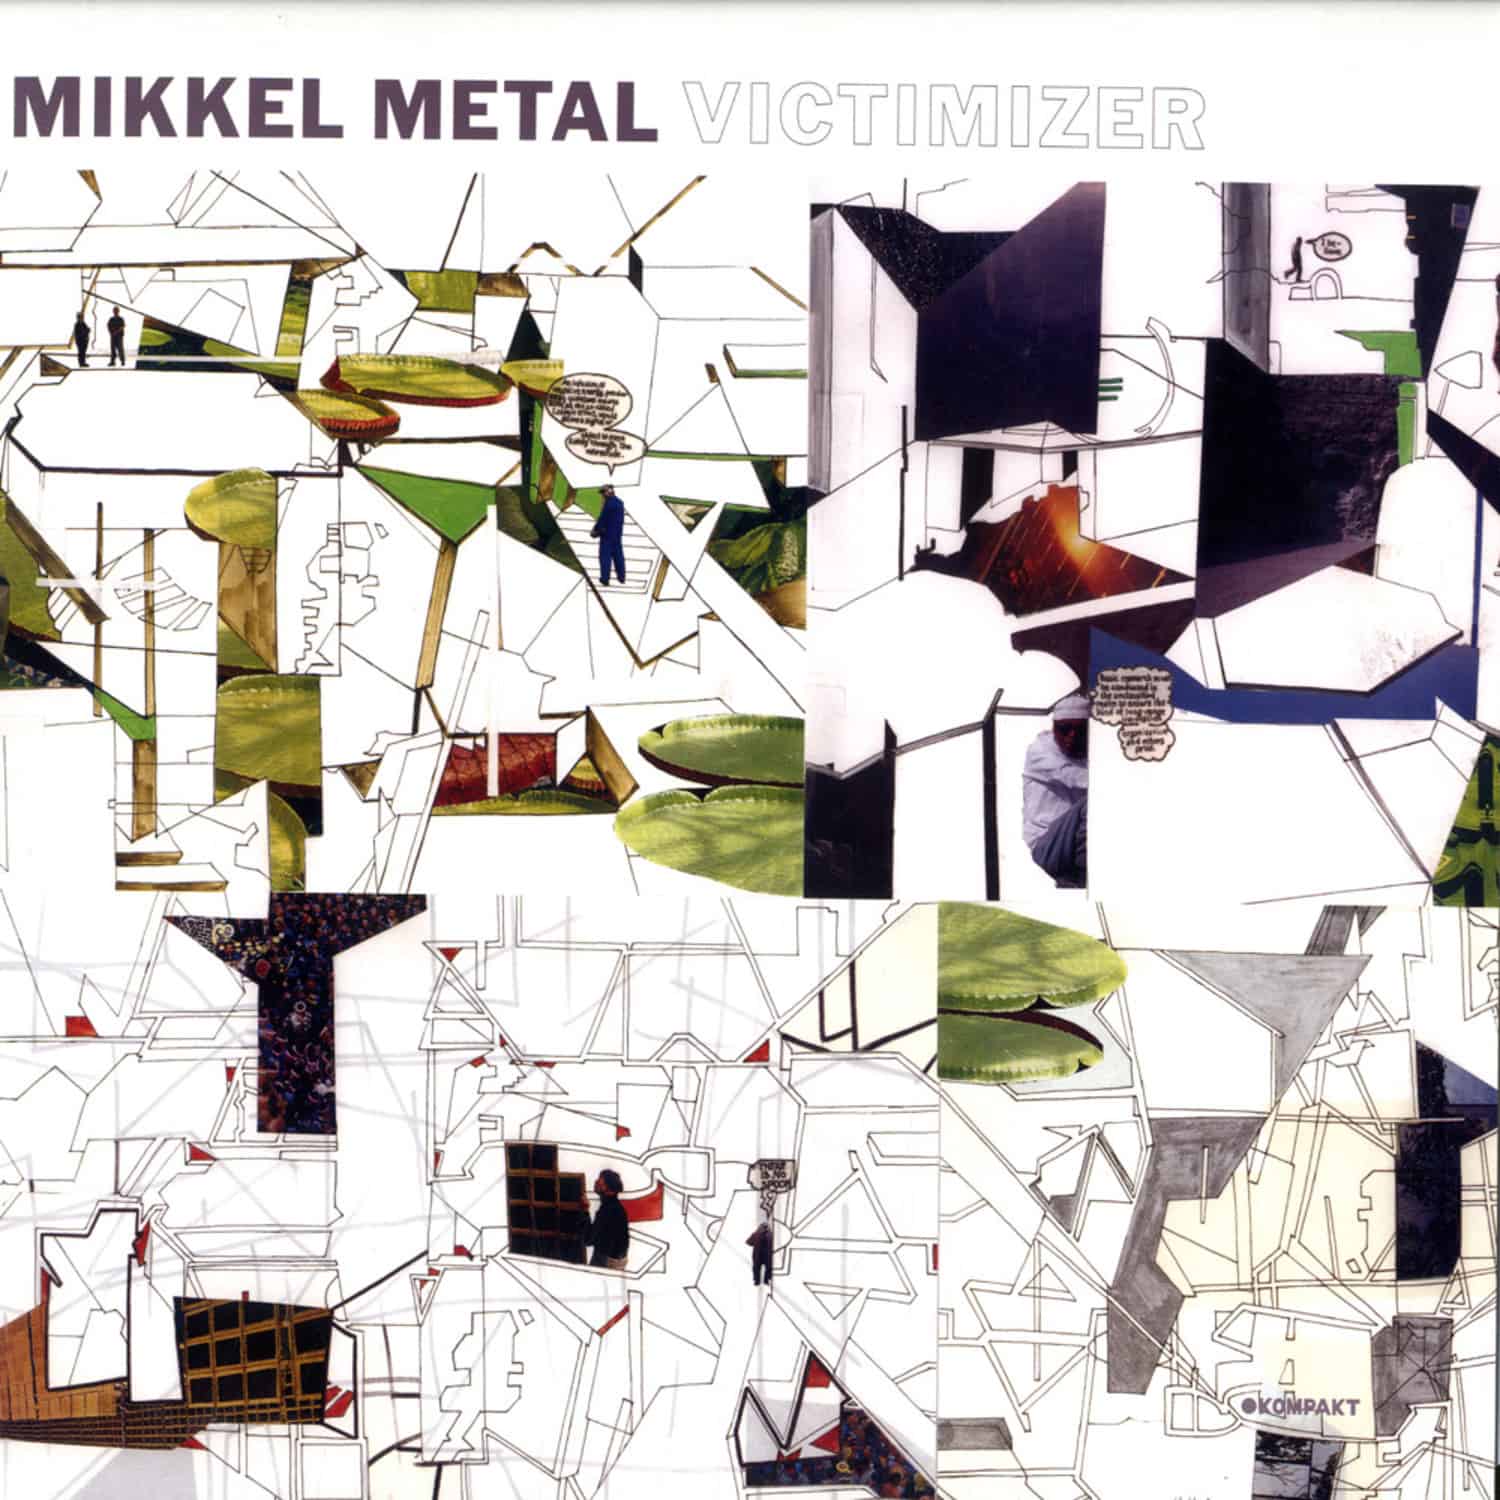 Mikkel Metal - VICTIMIZER